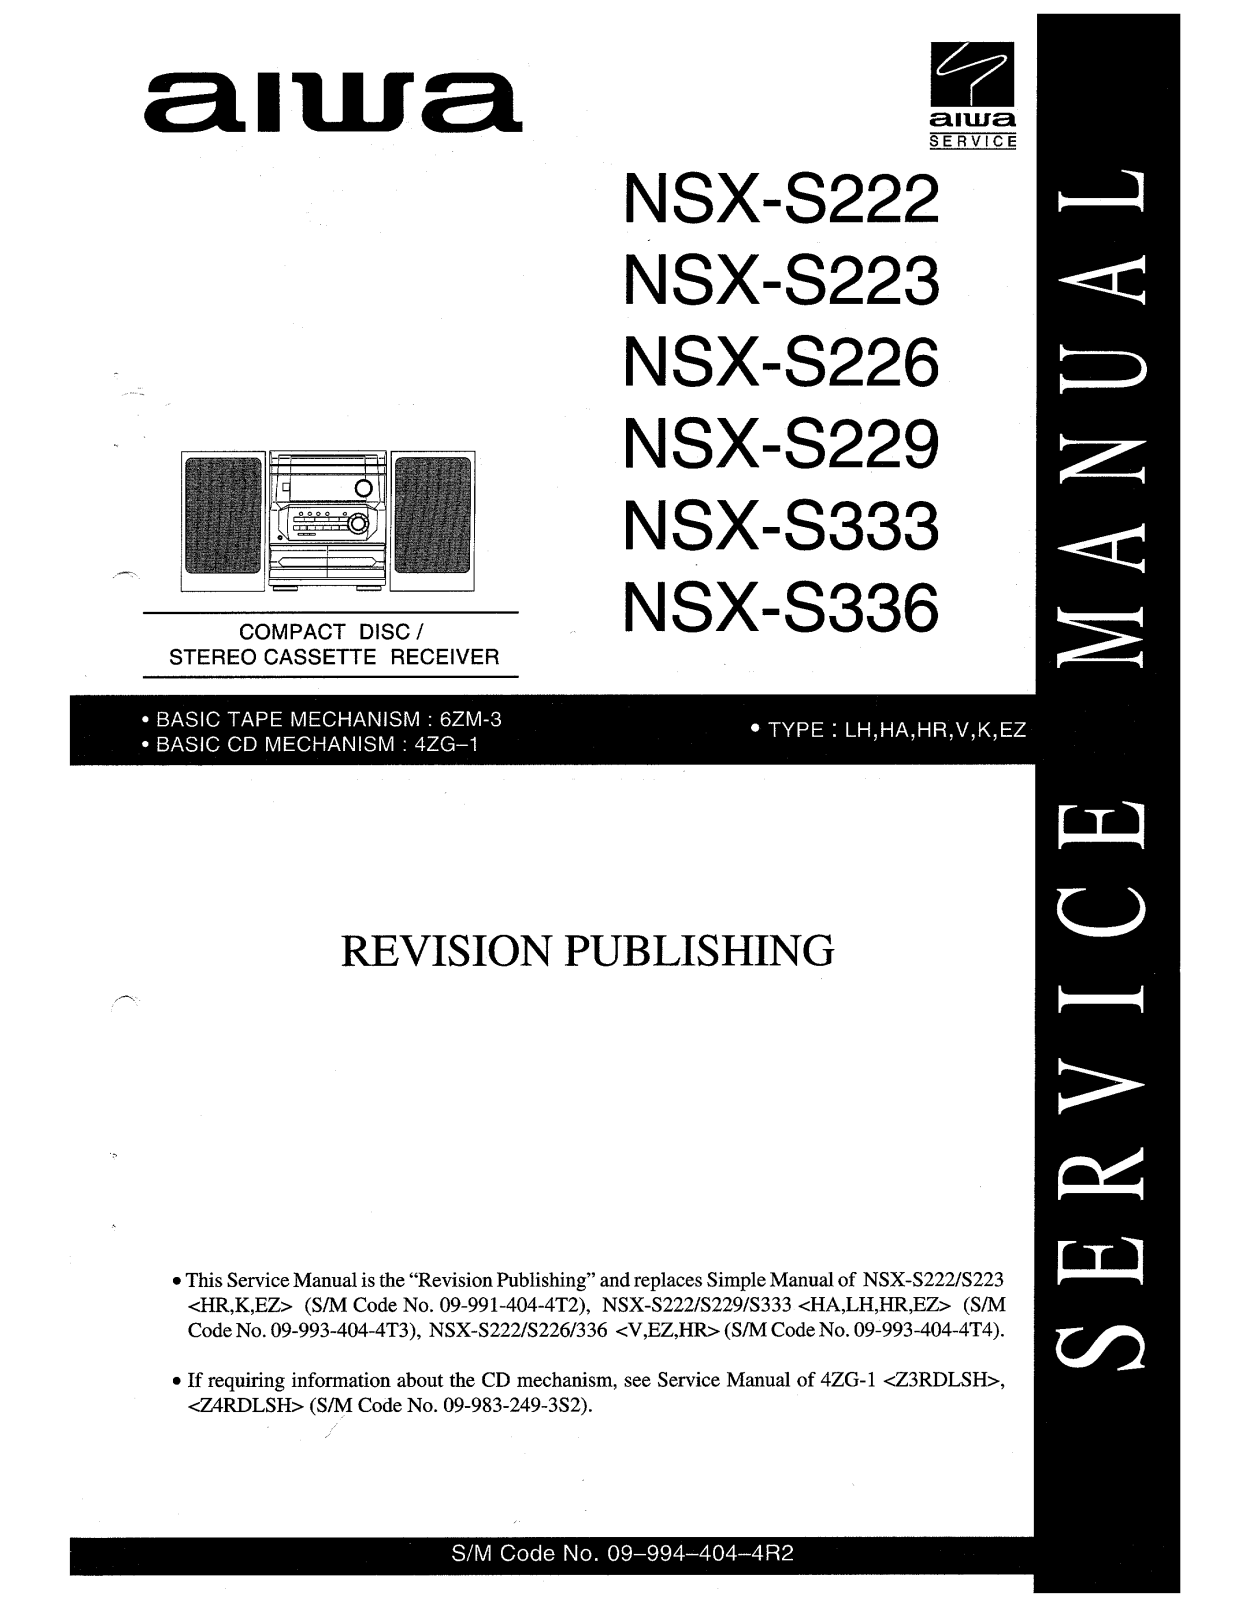 Aiwa NSX-S222, NSX-S223, NSX-S226, NSX-S229, NSX-S333 Service Manual